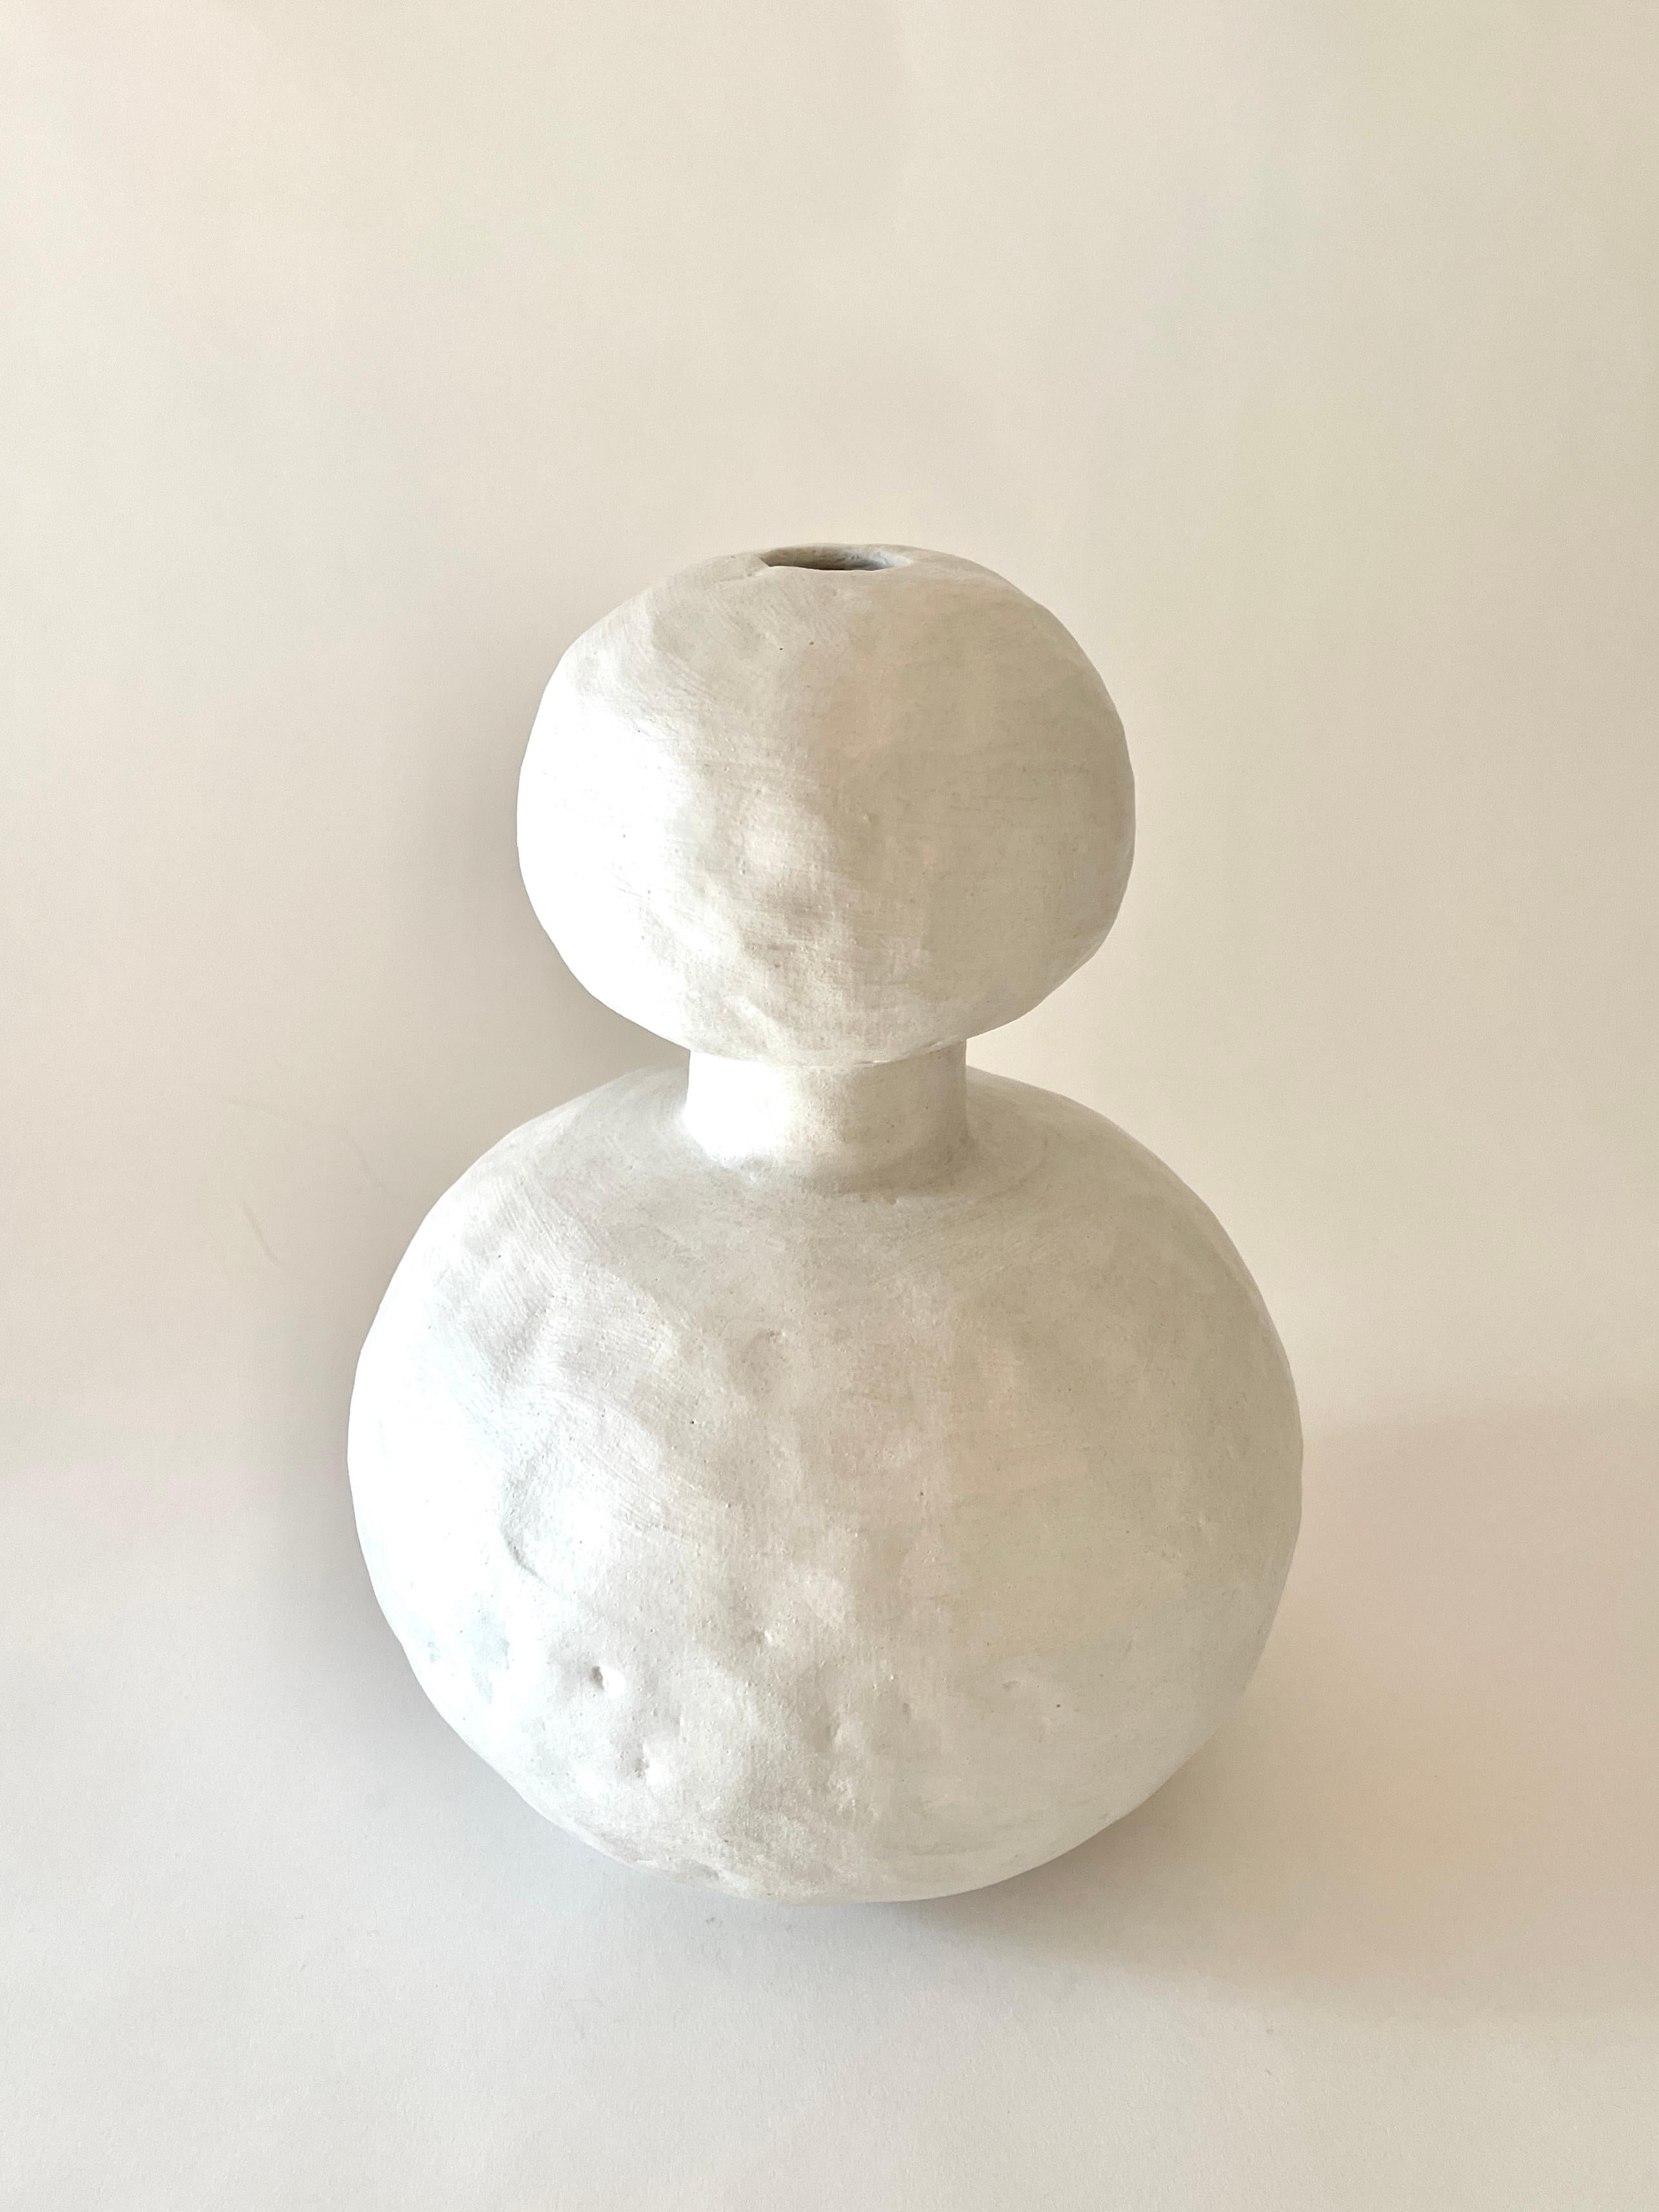 Jules White Vase von Meg Morrison
MATERIALIEN: Keramisch.
Abmessungen: Ø 23 x H 32 cm.

Erhältlich in den Farben Schwarz, Weiß, Gelb und Rosa. Alle Größenangaben sind Richtwerte. Obwohl Vasen wasserdicht sind, kann sich am Boden Kondenswasser